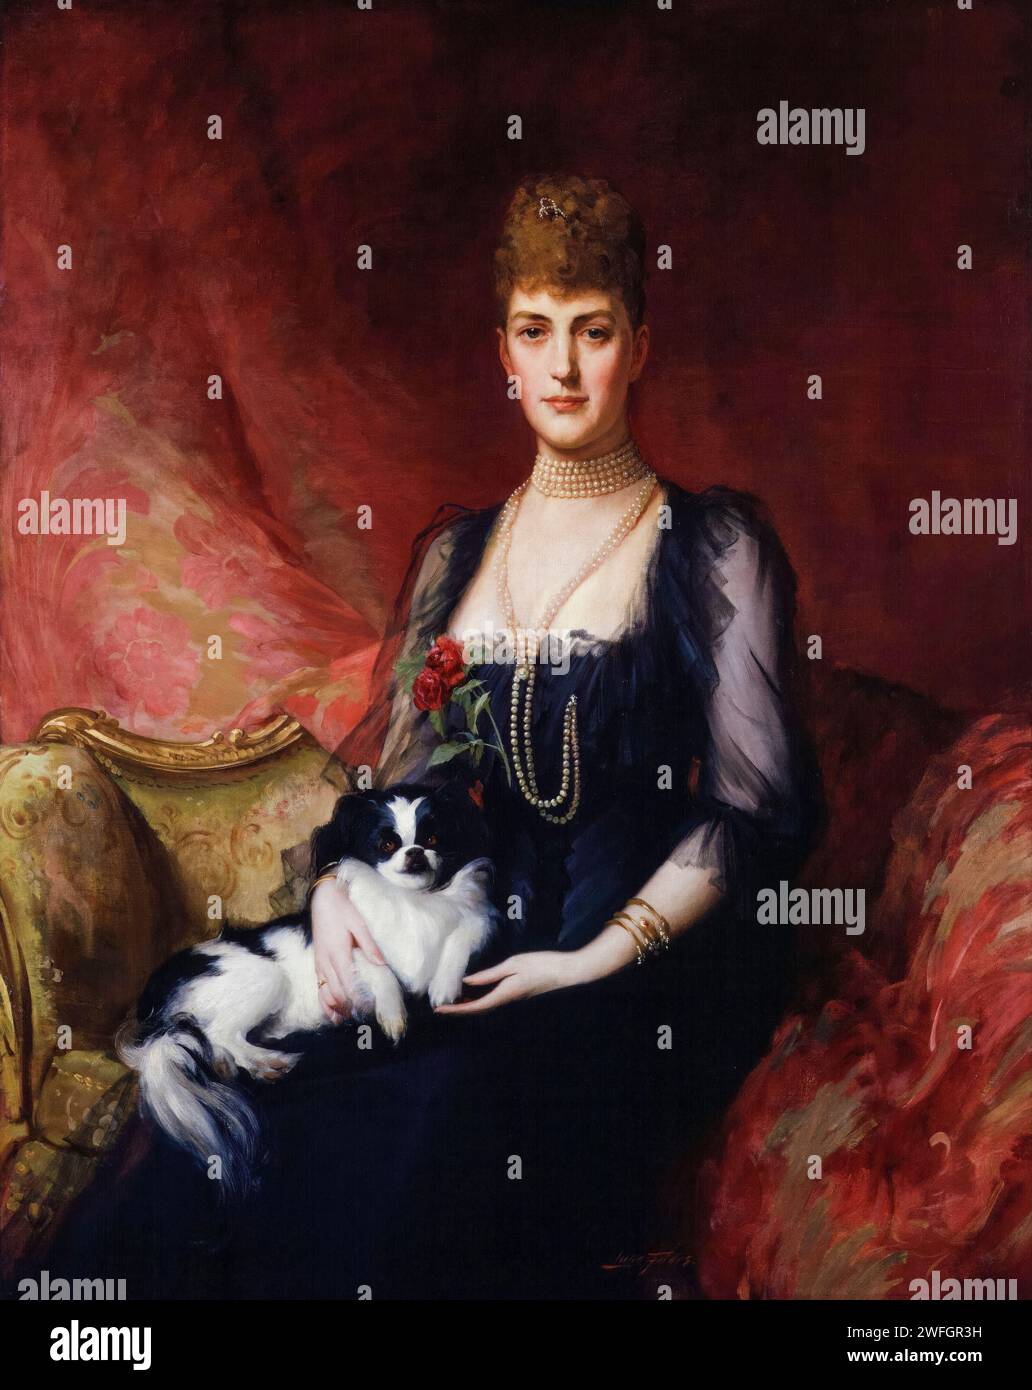 Reine Alexandra, de Danemark (1844-1925), alors princesse de Galles, plus tard reine consort du Royaume-Uni (1901-1910), portrait à l'huile sur toile d'après Sir Samuel Luke Fildes, 1920 Banque D'Images